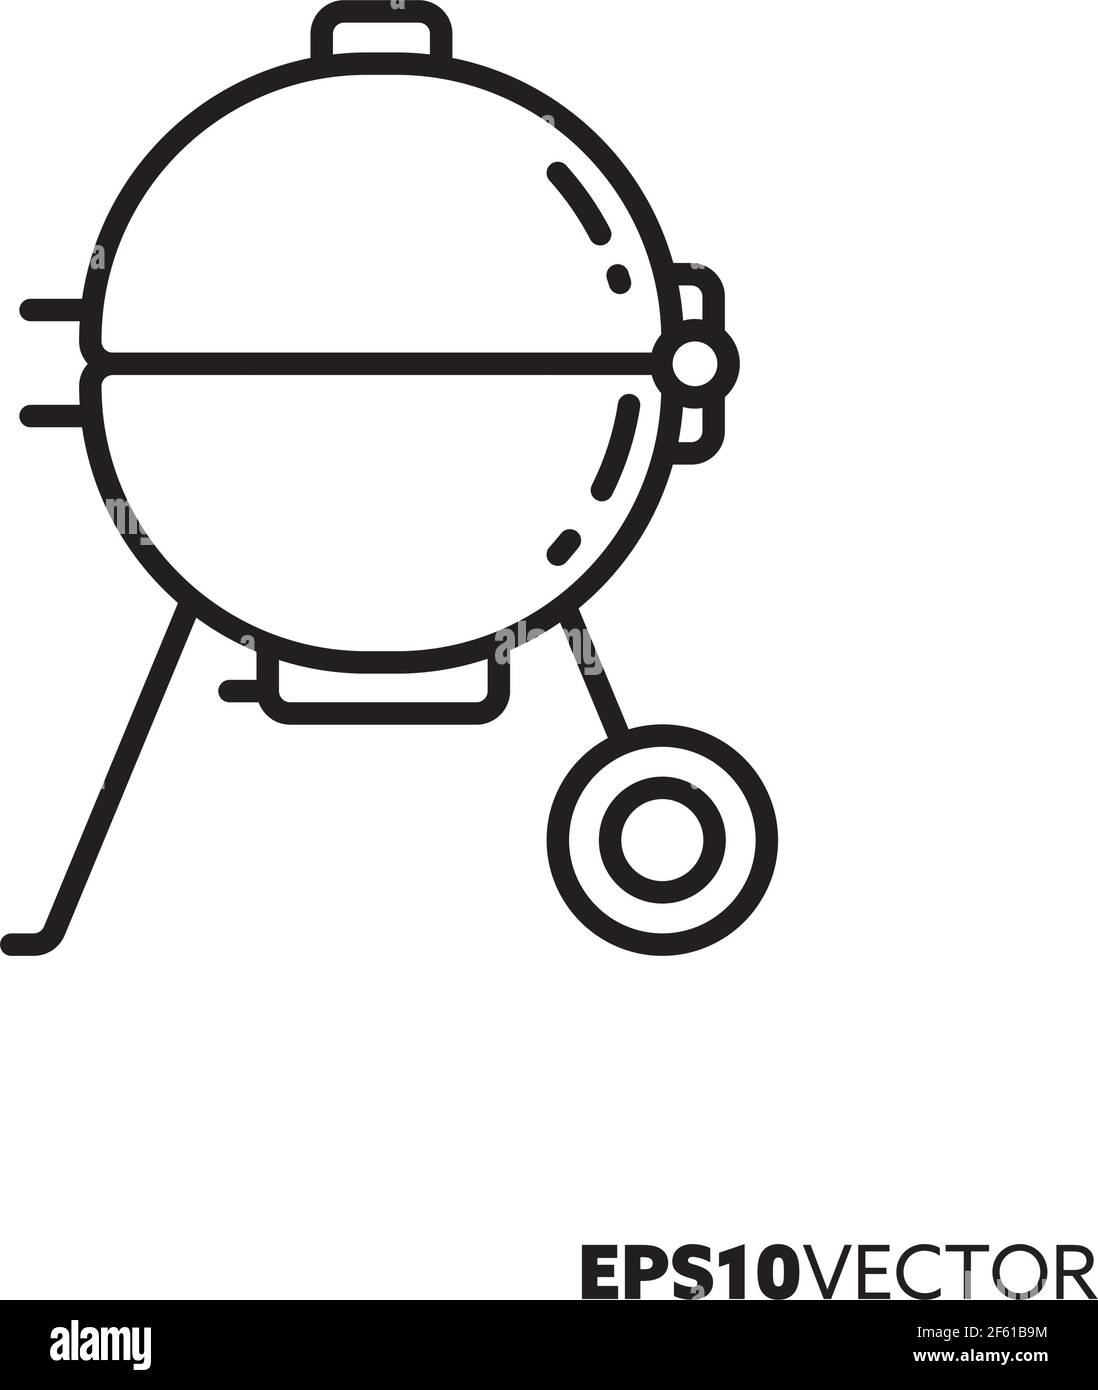 Symbol für die Grilllinie des Wasserkochers. Umreißen Symbol für Grill- und Grillgeräte. Kugelgrill flache Vektorgrafik. Stock Vektor